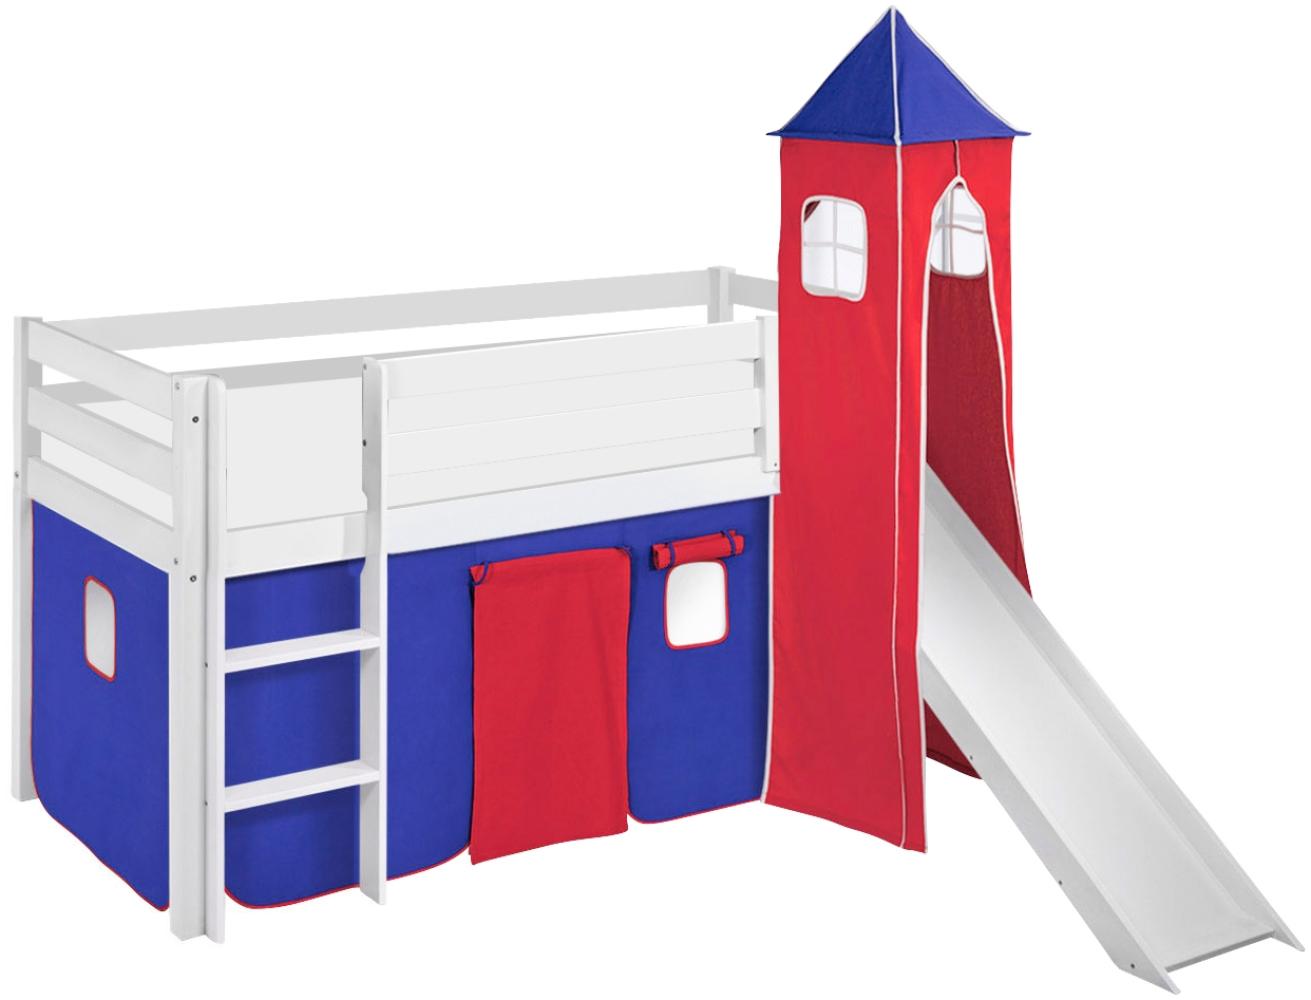 Lilokids 'Jelle' Spielbett 90 x 200 cm, Blau Rot, Kiefer massiv, mit Turm, Rutsche und Vorhang Bild 1